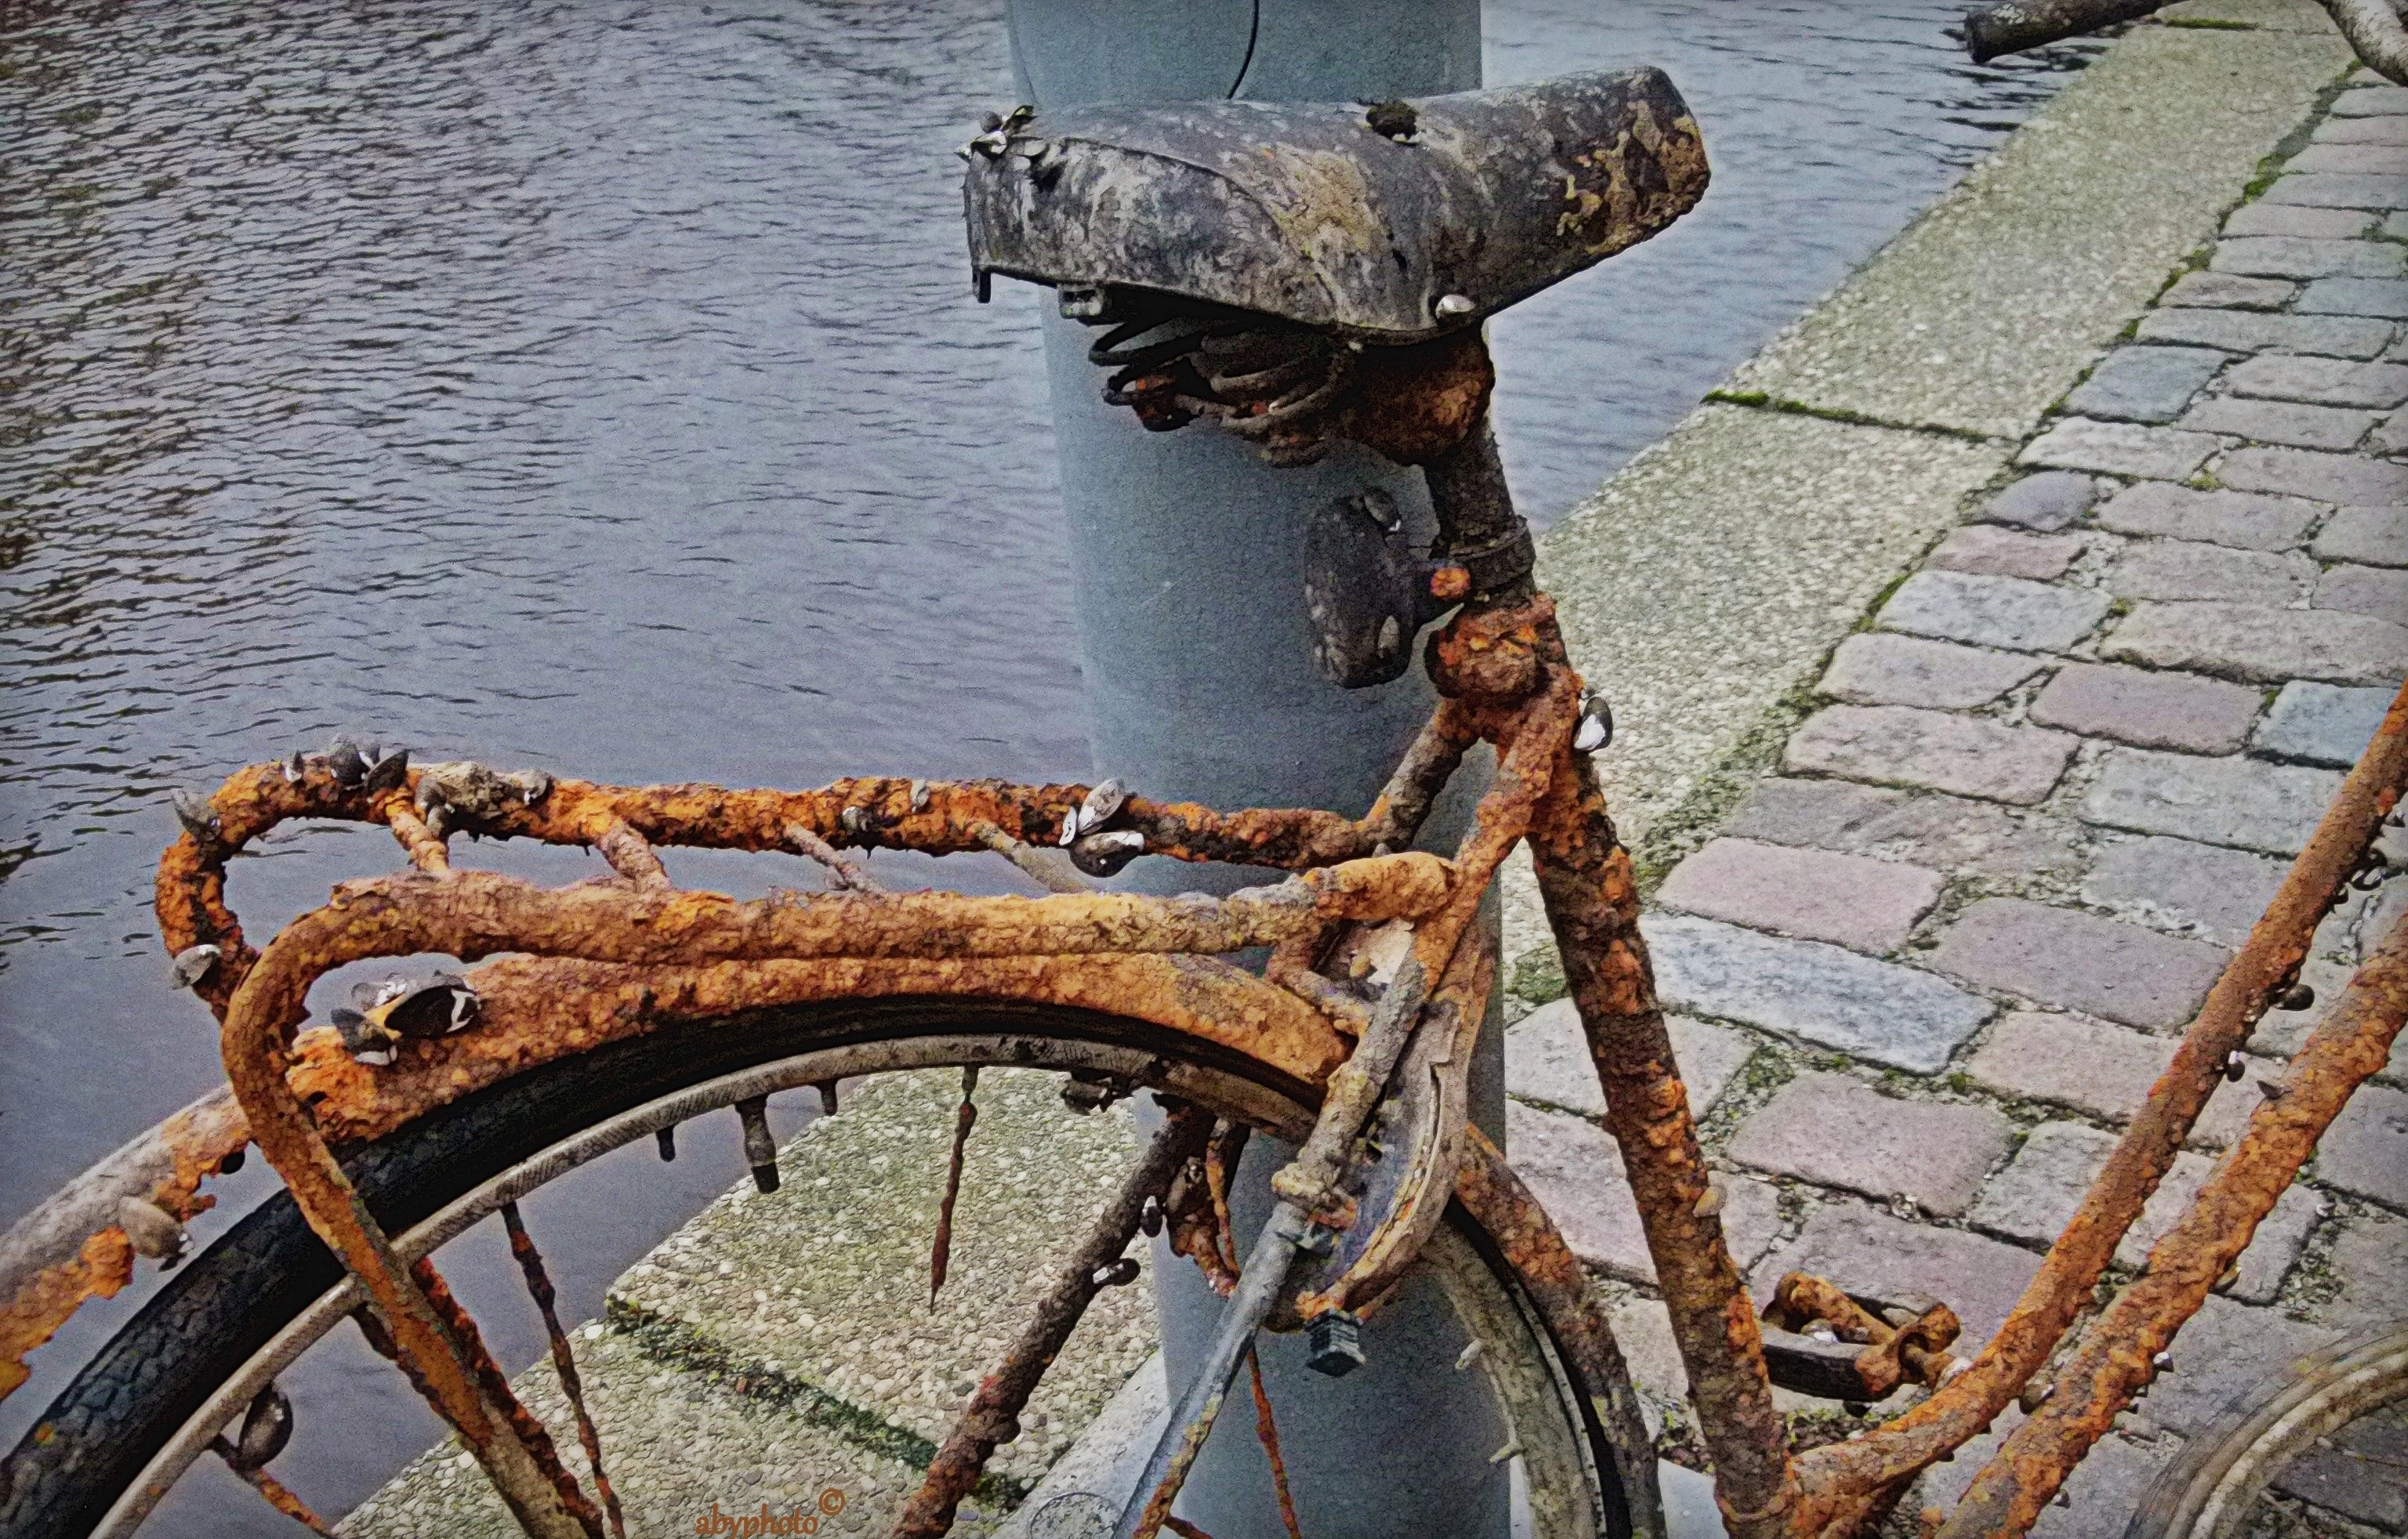 Weven zwak exotisch Uit de sloot gevist: roestige fiets in Groningen | Columbus Travel